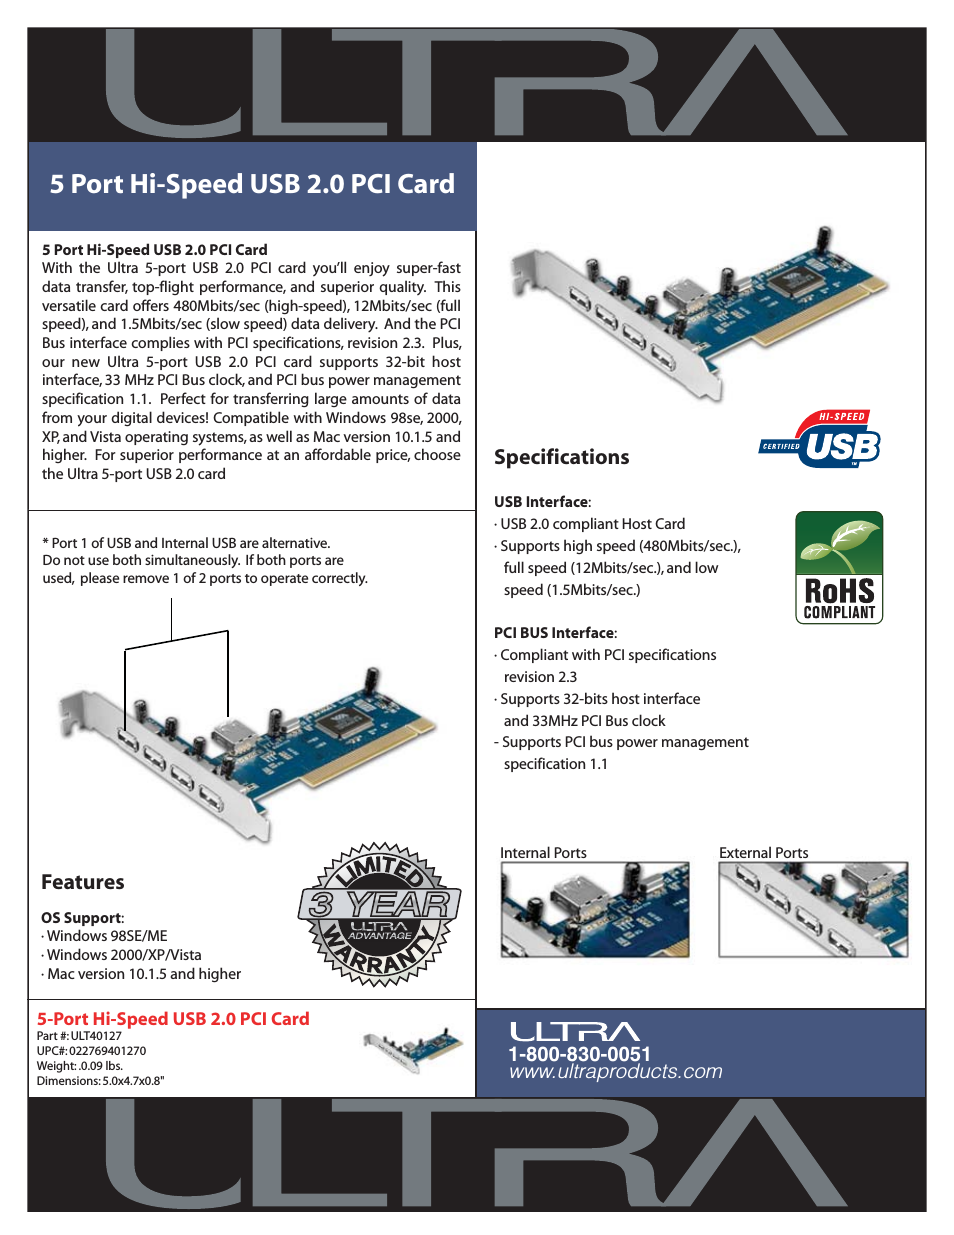 5 Port Hi-Speed USB 2.0 PCI Card ULT40127